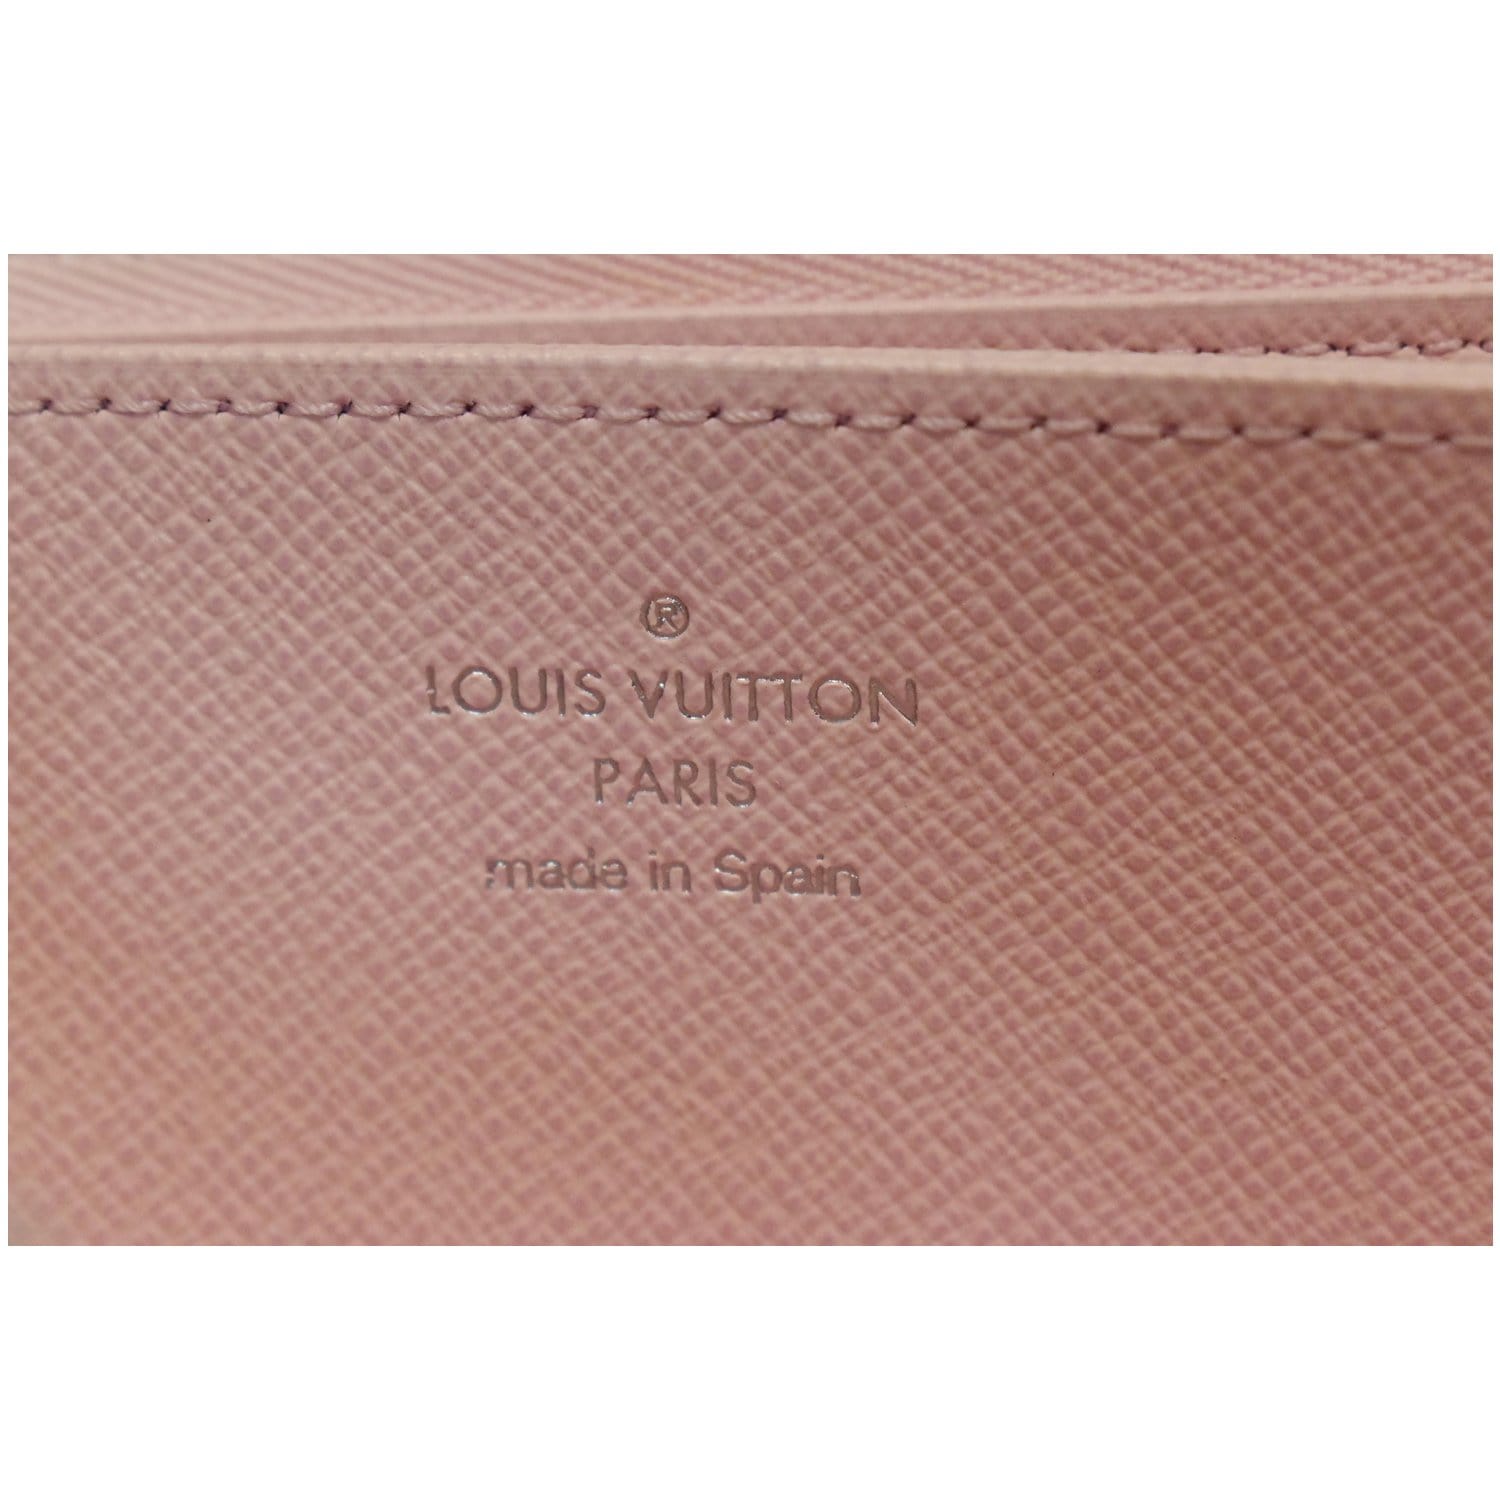 LOUIS VUITTON Monogram Escale Zippy Wallet Pastel 1279262